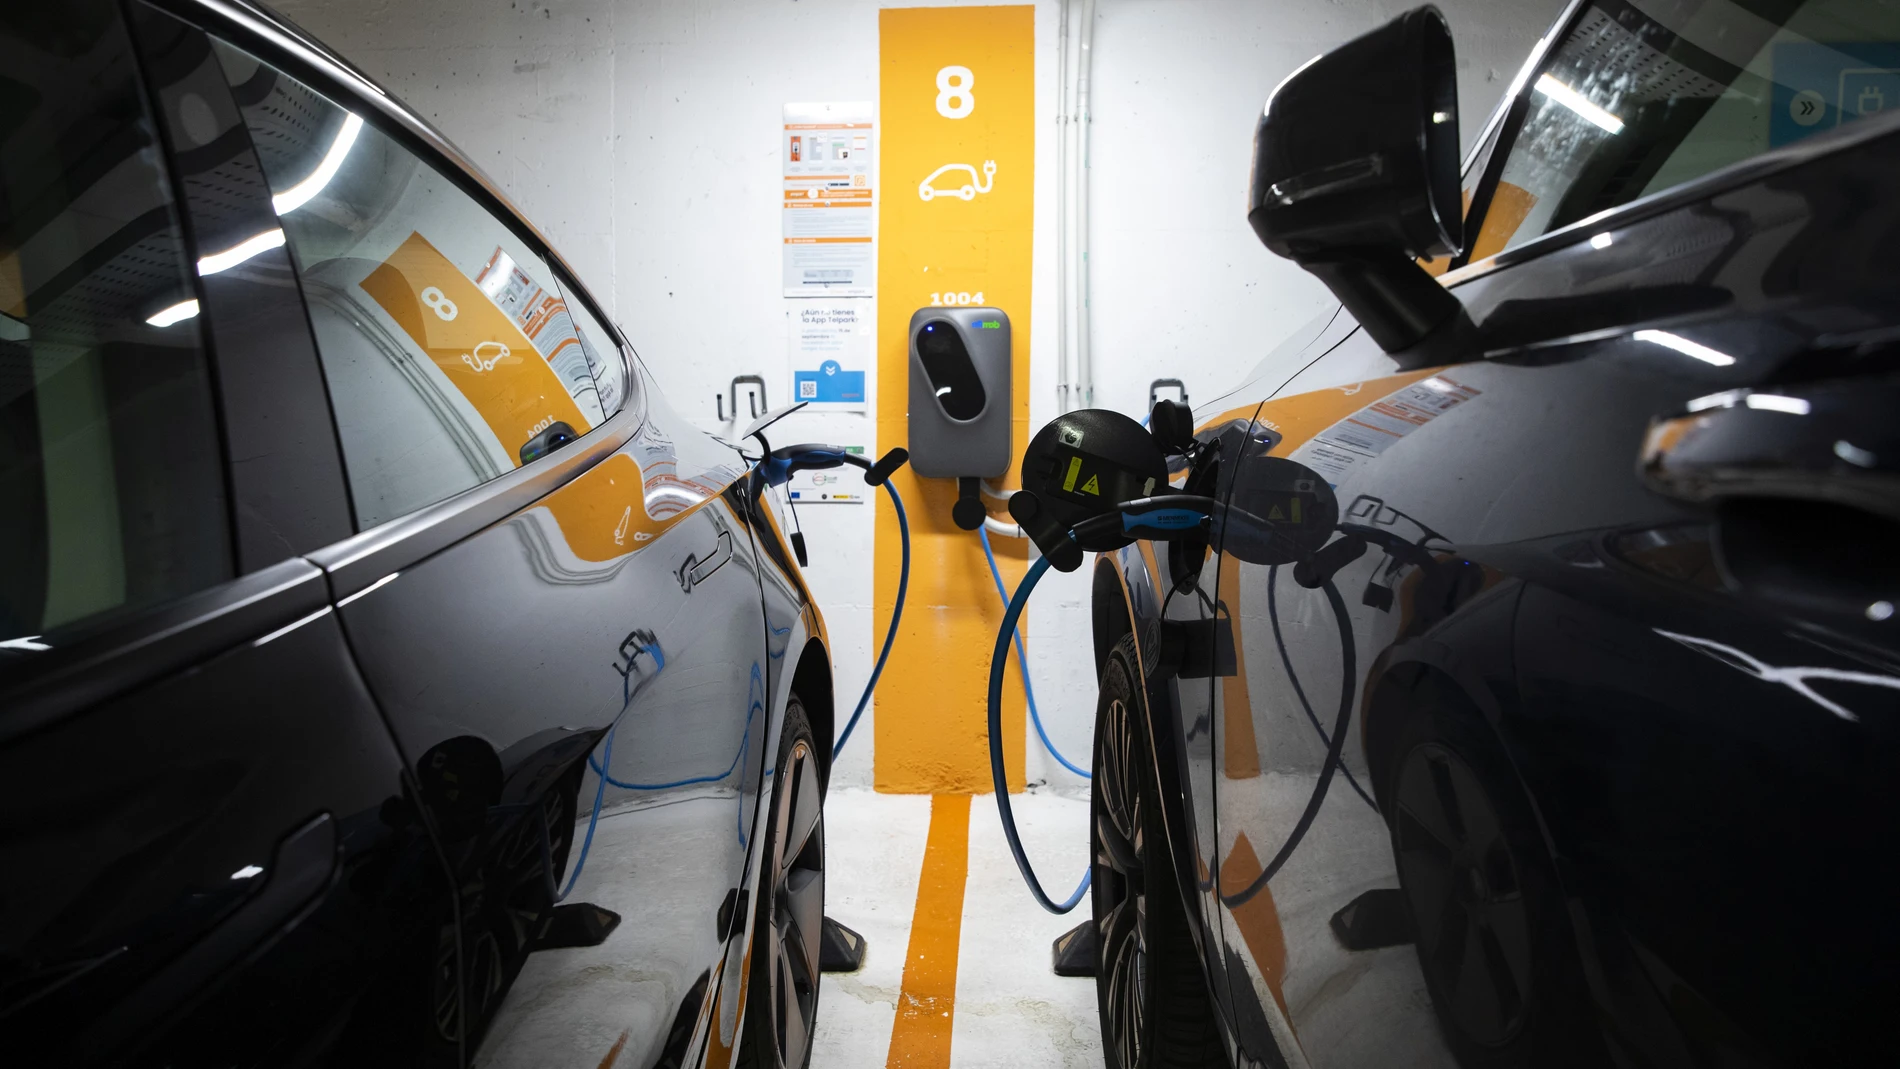 Imagen de coches eléctricos recargando las baterias en un aparcamiento